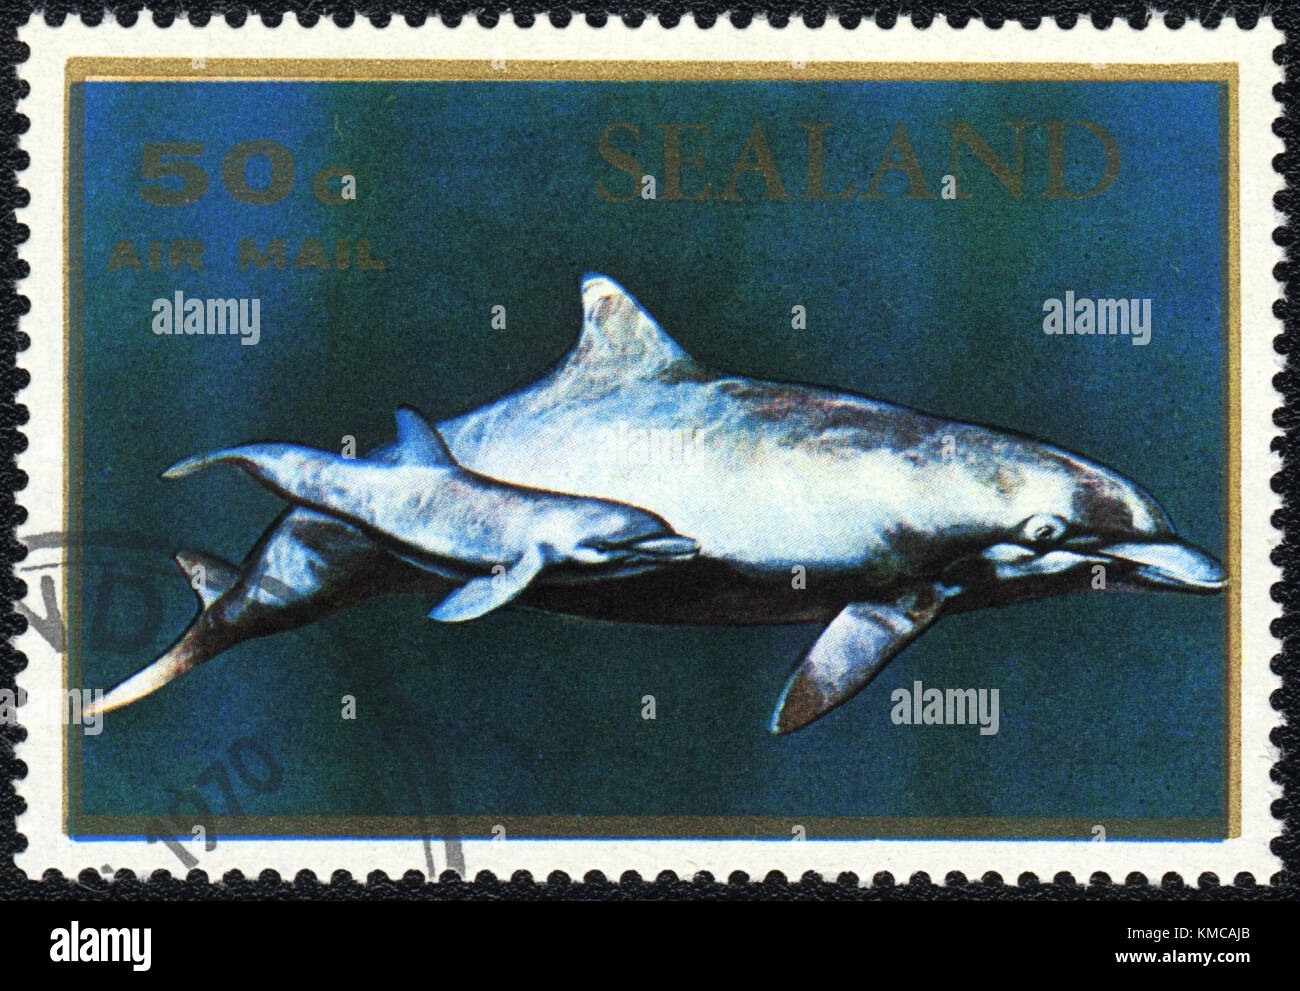 Un timbre imprimé en Principauté de Sealand montre une série, dauphins, vers 1970 Banque D'Images